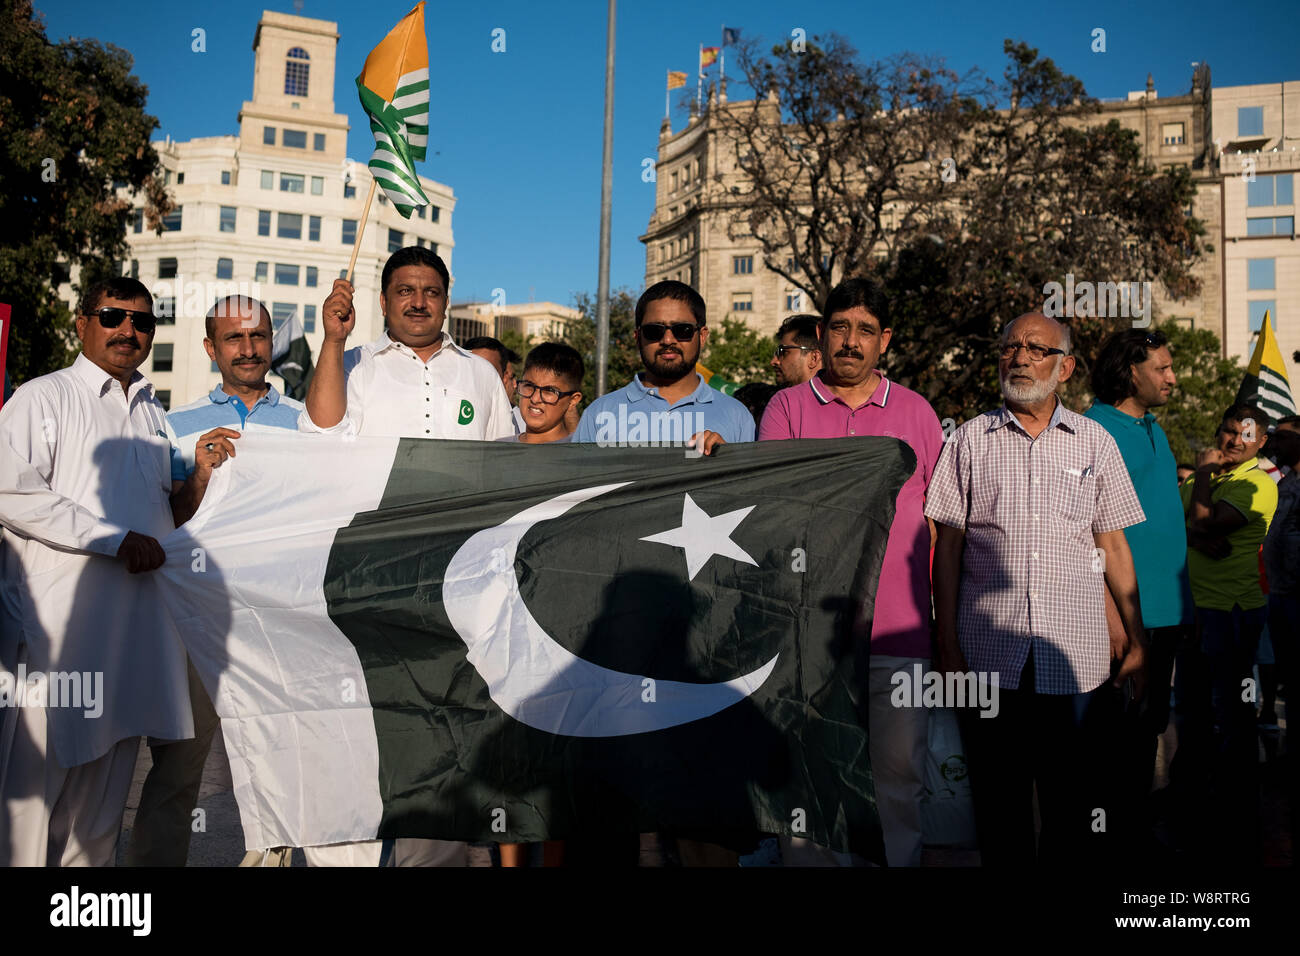 Barcelona, España - 10 de agosto de 2019: Cachemira y ciudadanos paquistaníes protestan y se manifiestan contra indios de revocar el estatuto de la región autónoma con bann Foto de stock